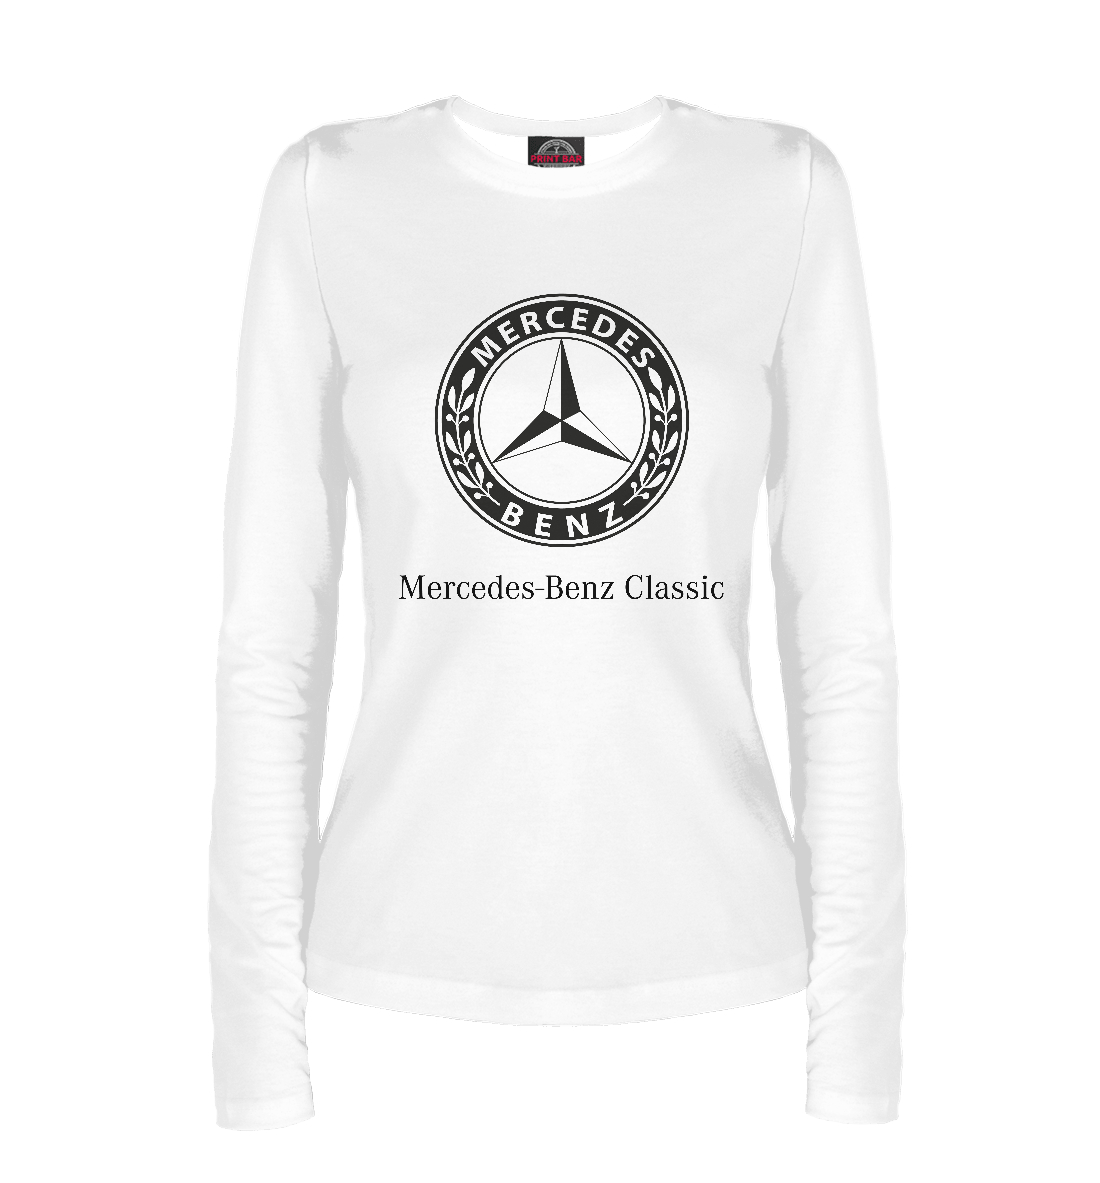 Лонгслив Mercedes-Benz MER-703334-lon-1